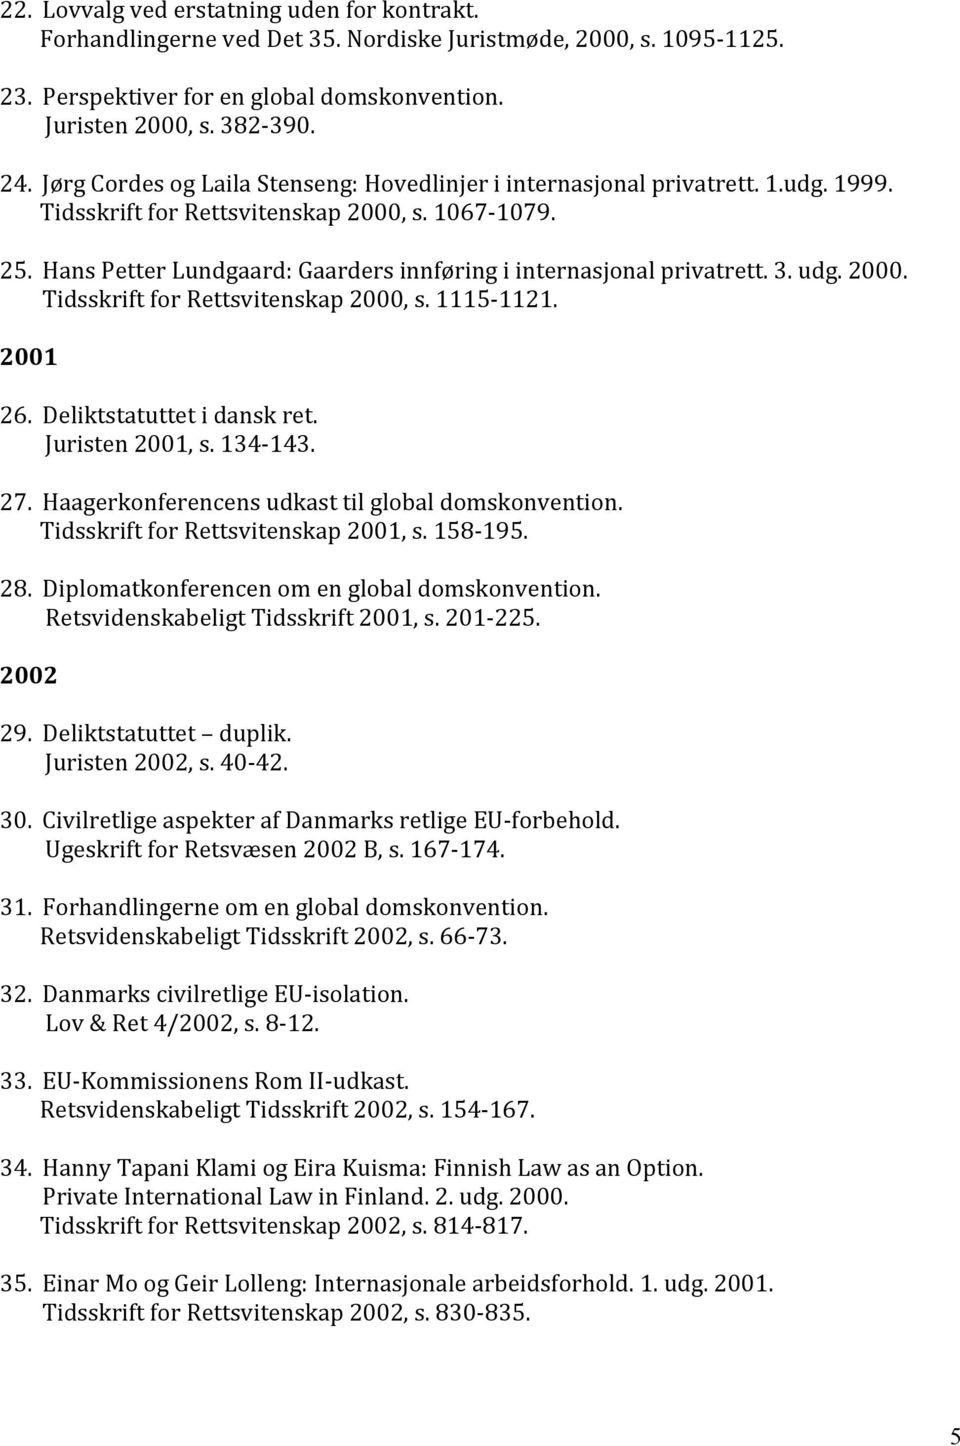 Hans Petter Lundgaard: Gaarders innføring i internasjonal privatrett. 3. udg. 2000. Tidsskrift for Rettsvitenskap 2000, s. 1115-1121. 2001 26. Deliktstatuttet i dansk ret. Juristen 2001, s. 134-143.